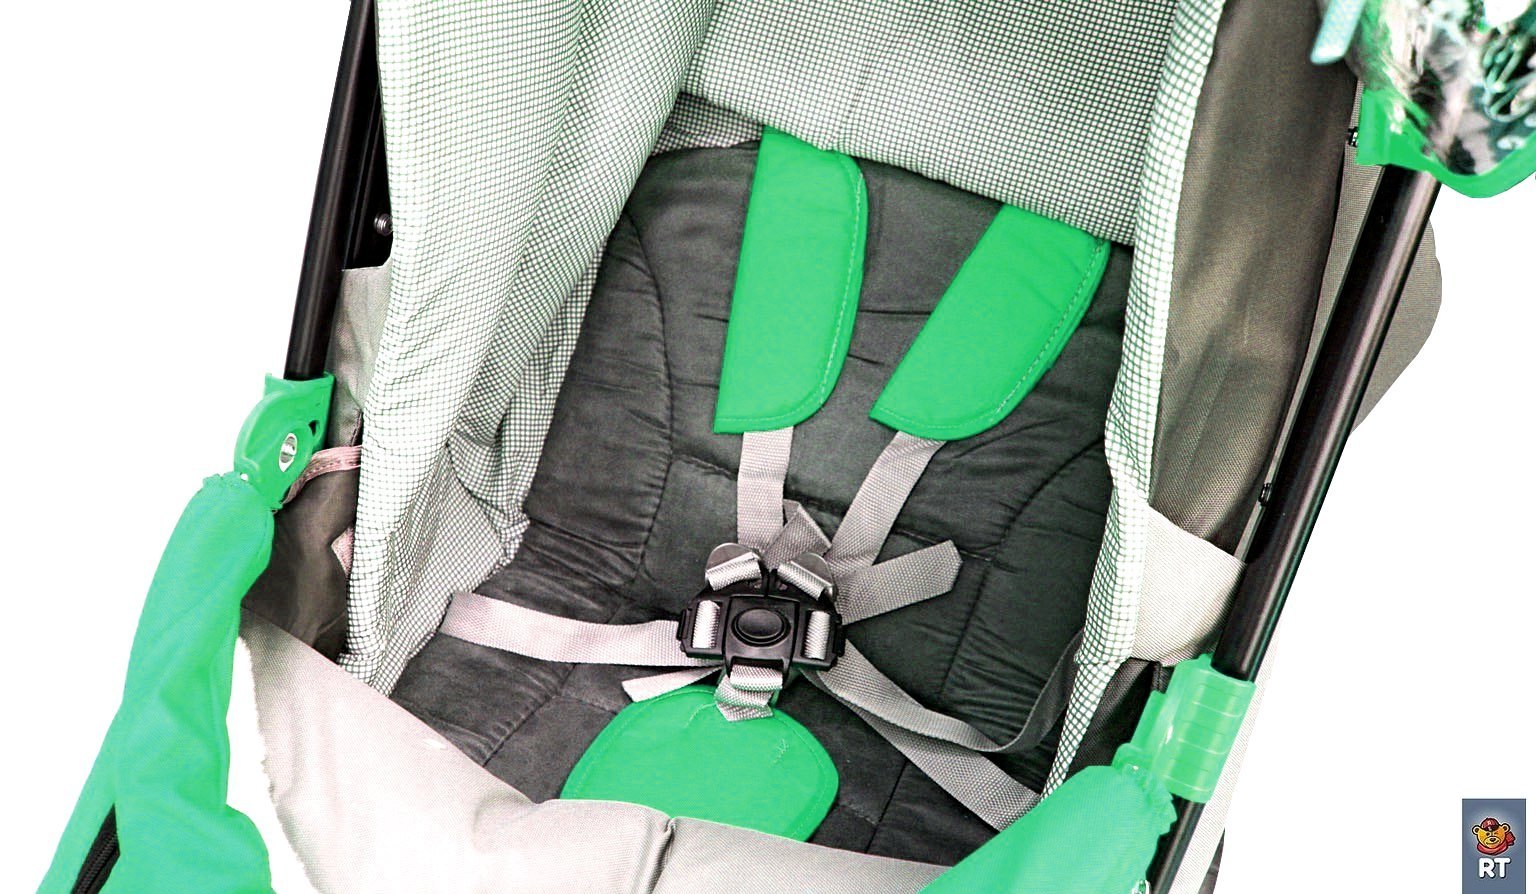 Санки-коляска Snow Galaxy City-1-1, дизайн - Совушки на зелёном, на больших надувных колёсах с сумкой и варежками  